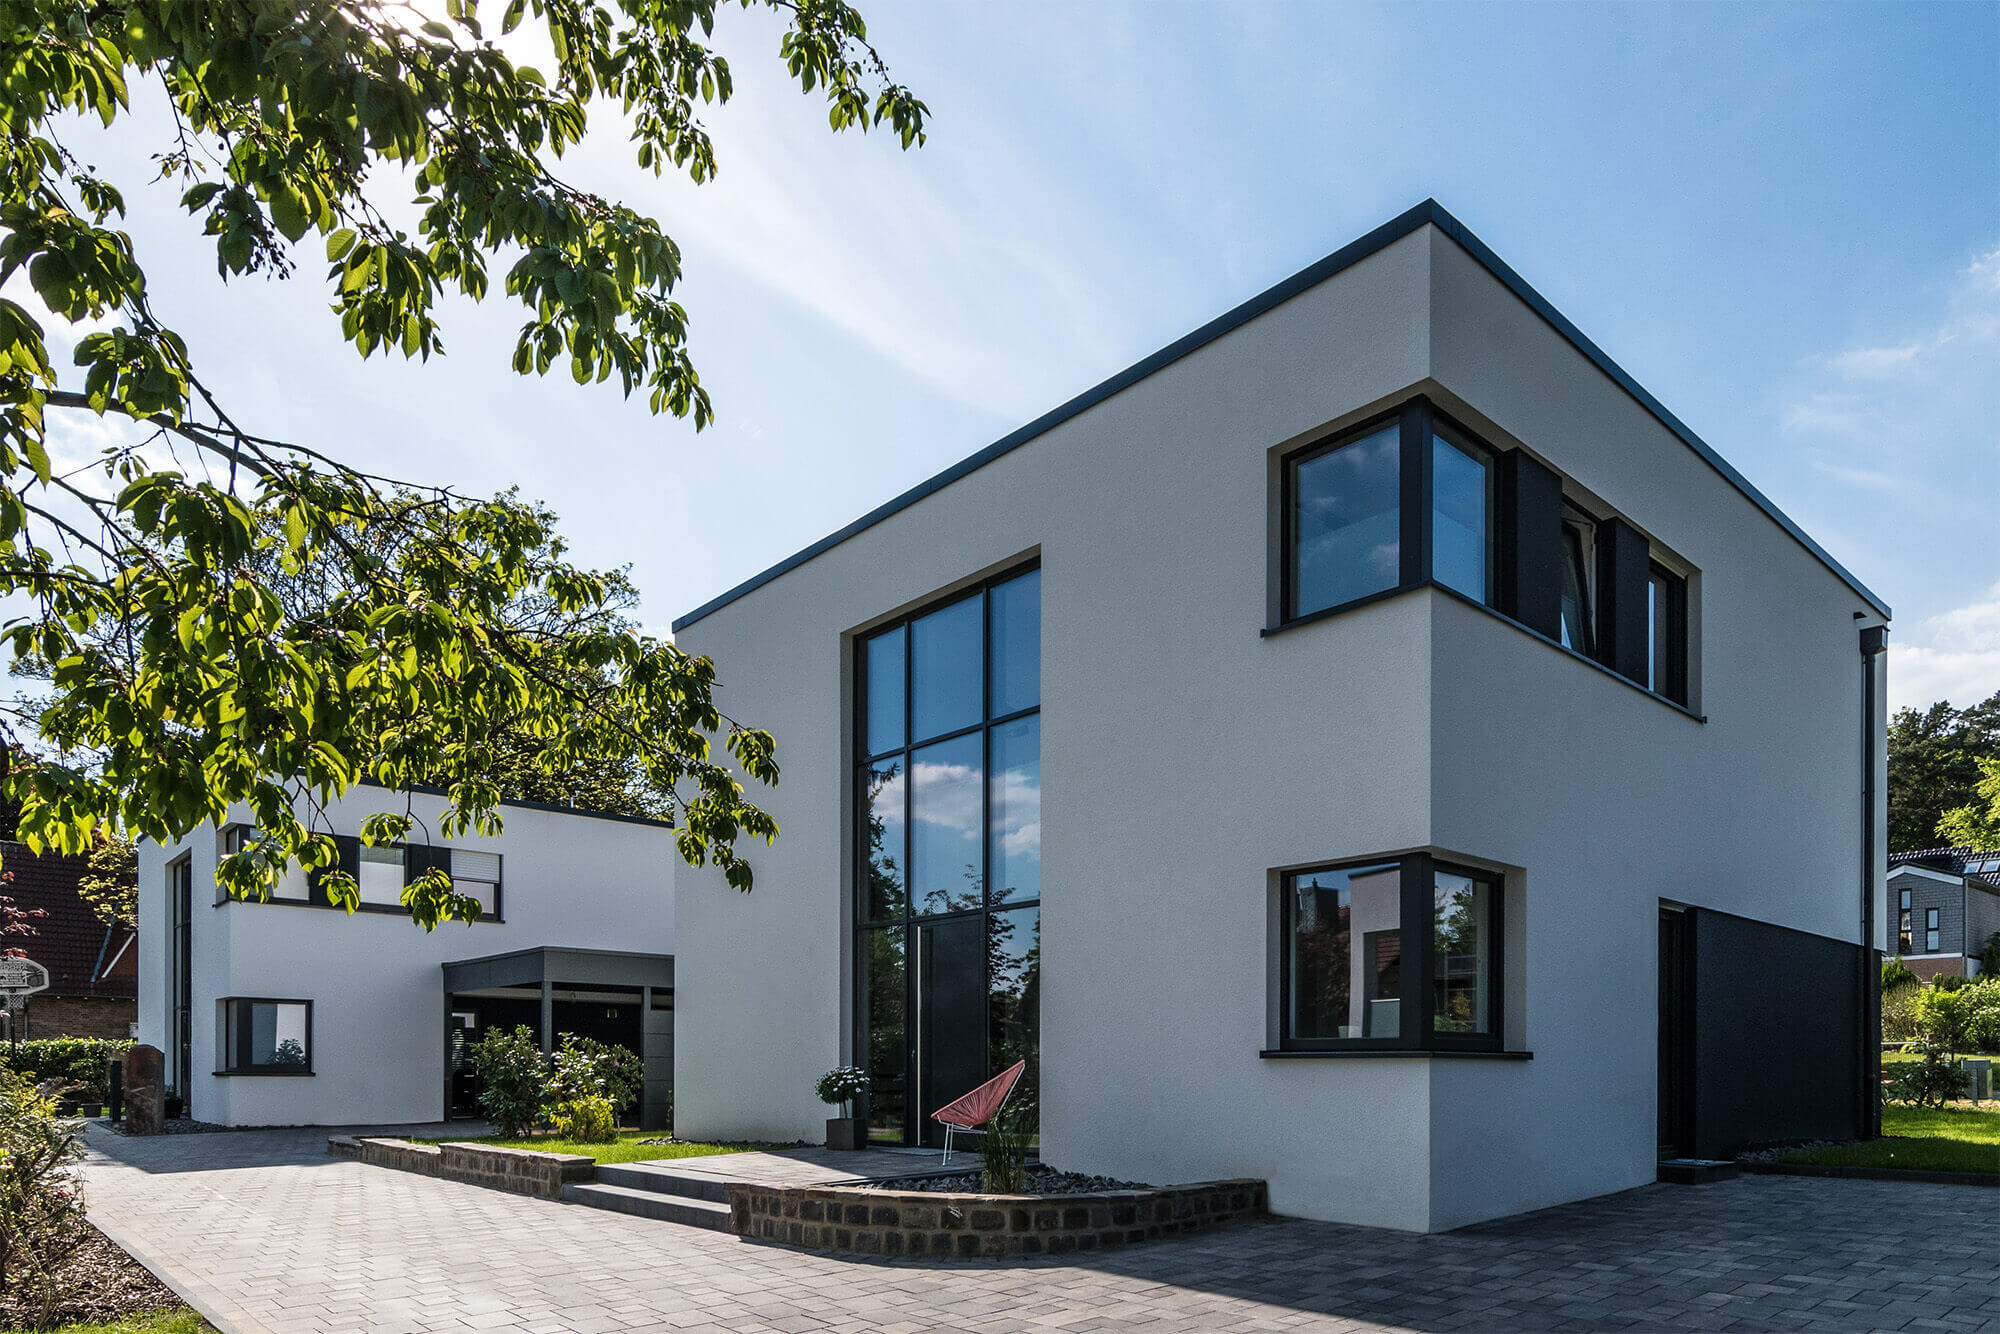 Wohnbebauung in Bauhausstil | Architektur Osnabrück